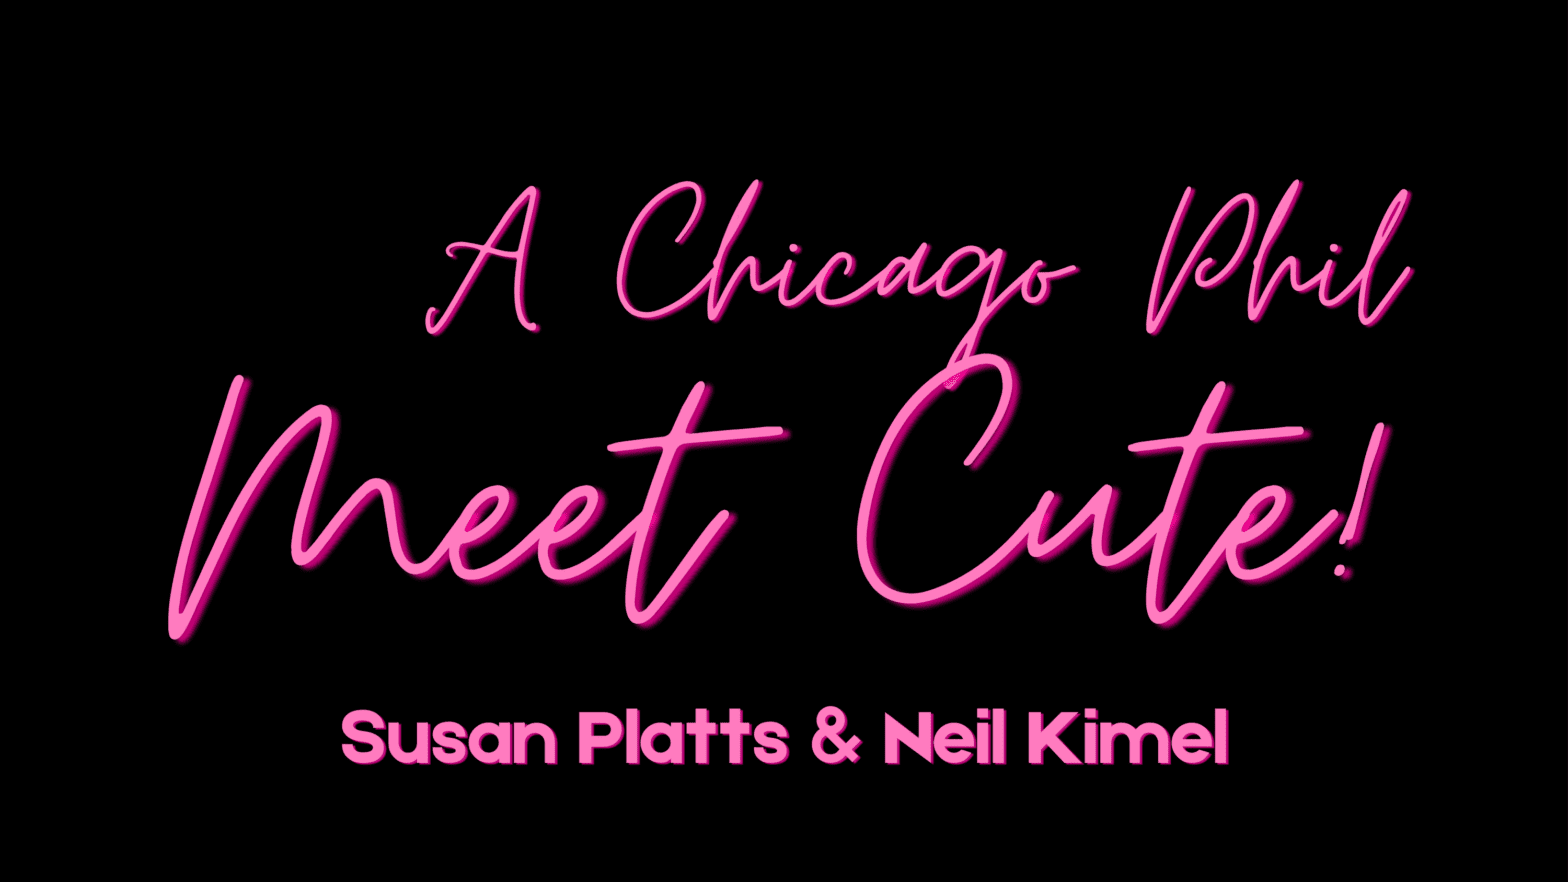 A Chicago Philharmonic Meet Cute: Susan Platts & Neil Kimel